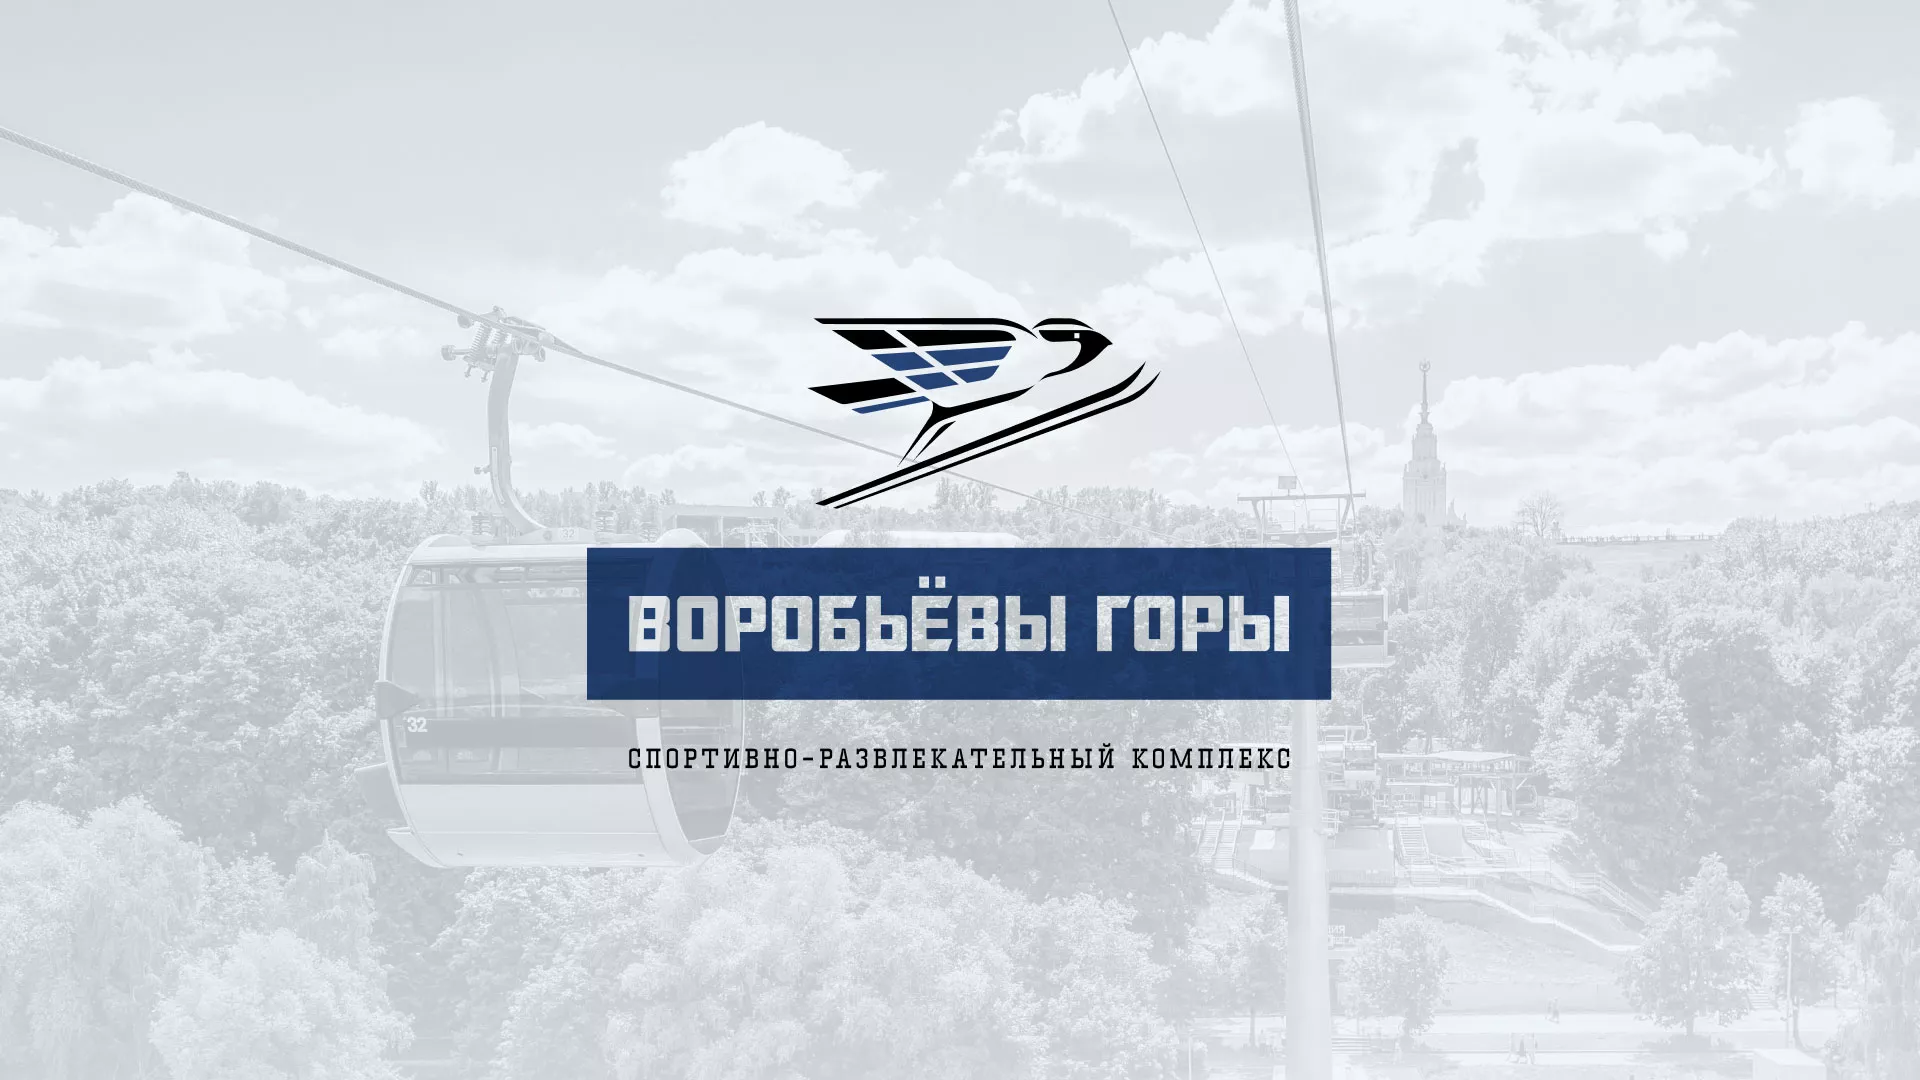 Разработка сайта в Лабинске для спортивно-развлекательного комплекса «Воробьёвы горы»